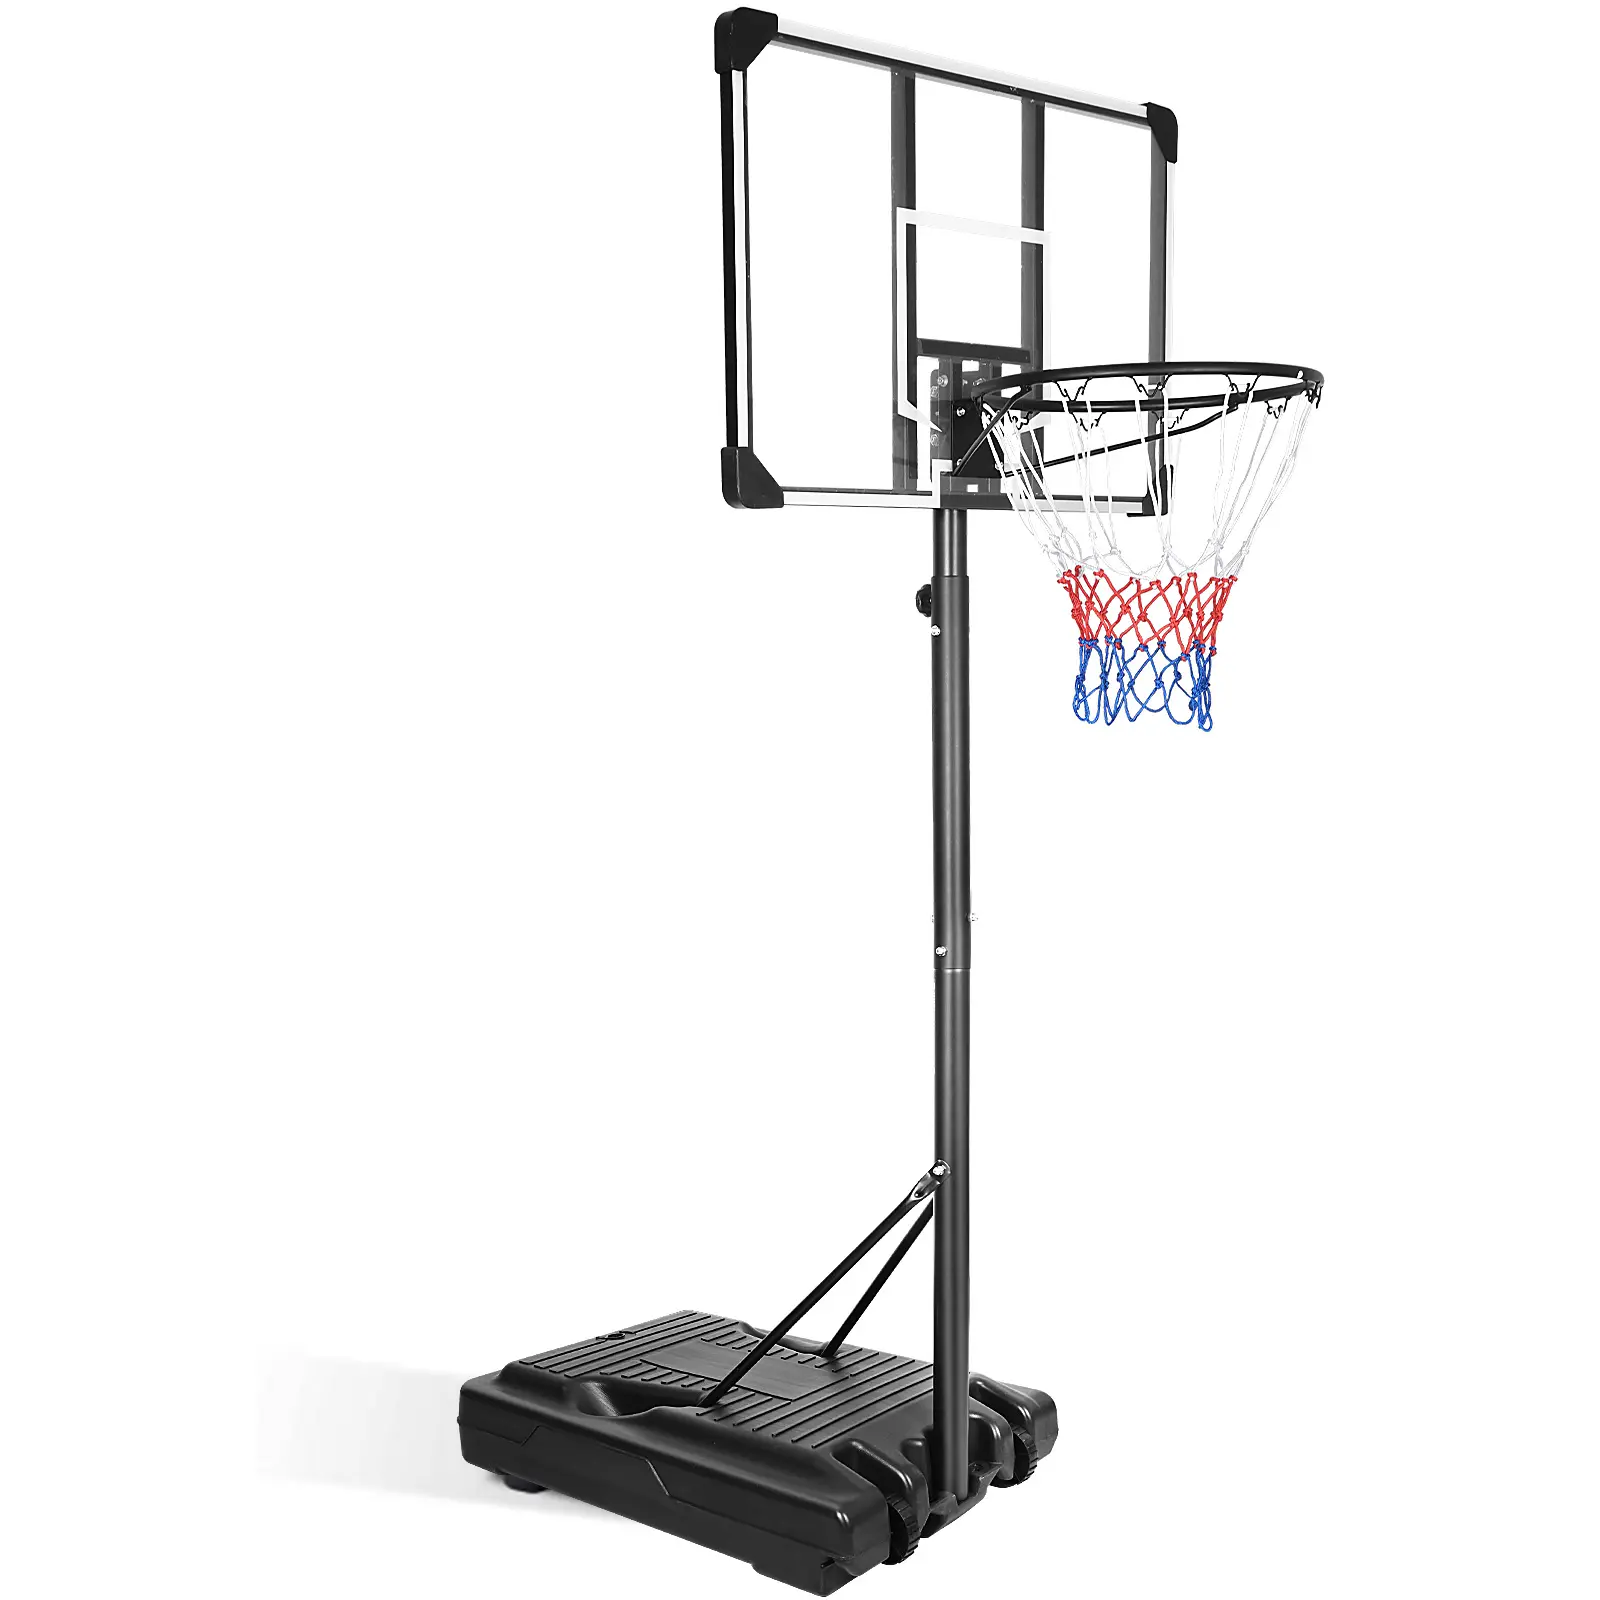 Подходит для занятий спортом, переносной баскетбольное кольцо подставки для системы с регулировкой по высоте, 36 дюймов щит для дома и улицы Баскетбол игровой набор